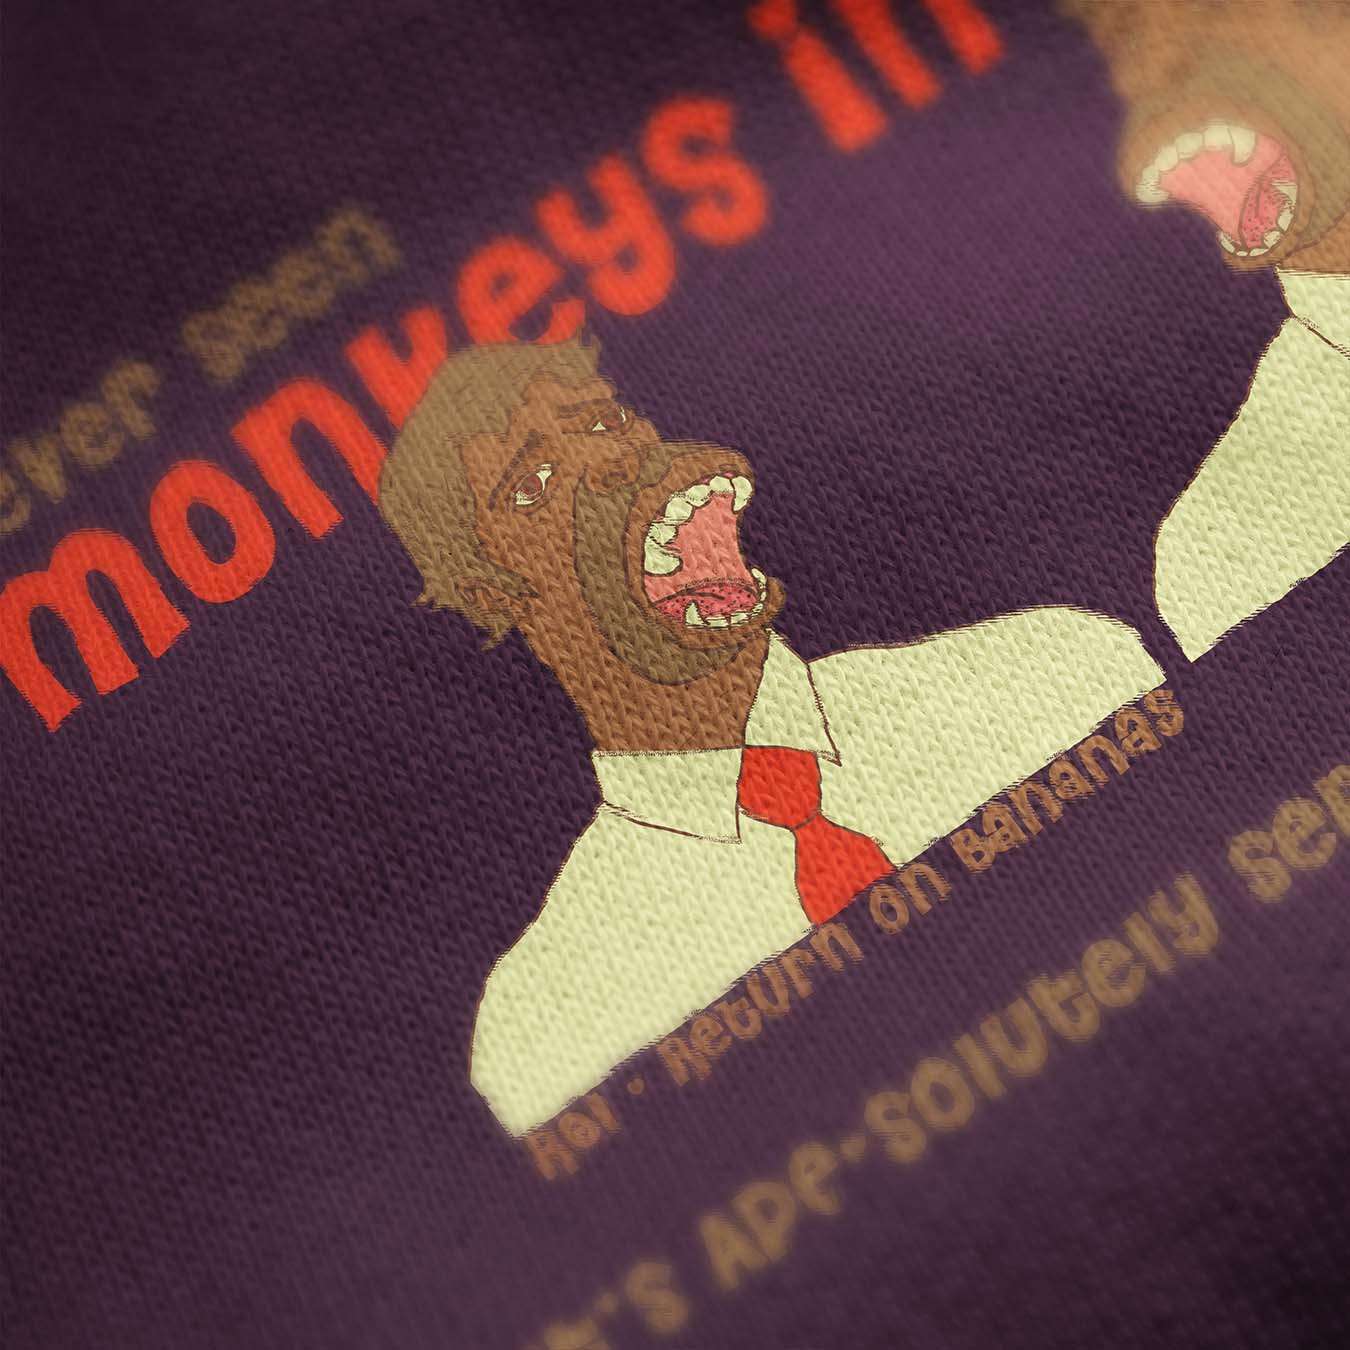 Monkeys In Suits Printed Sweatshirt - keos.life